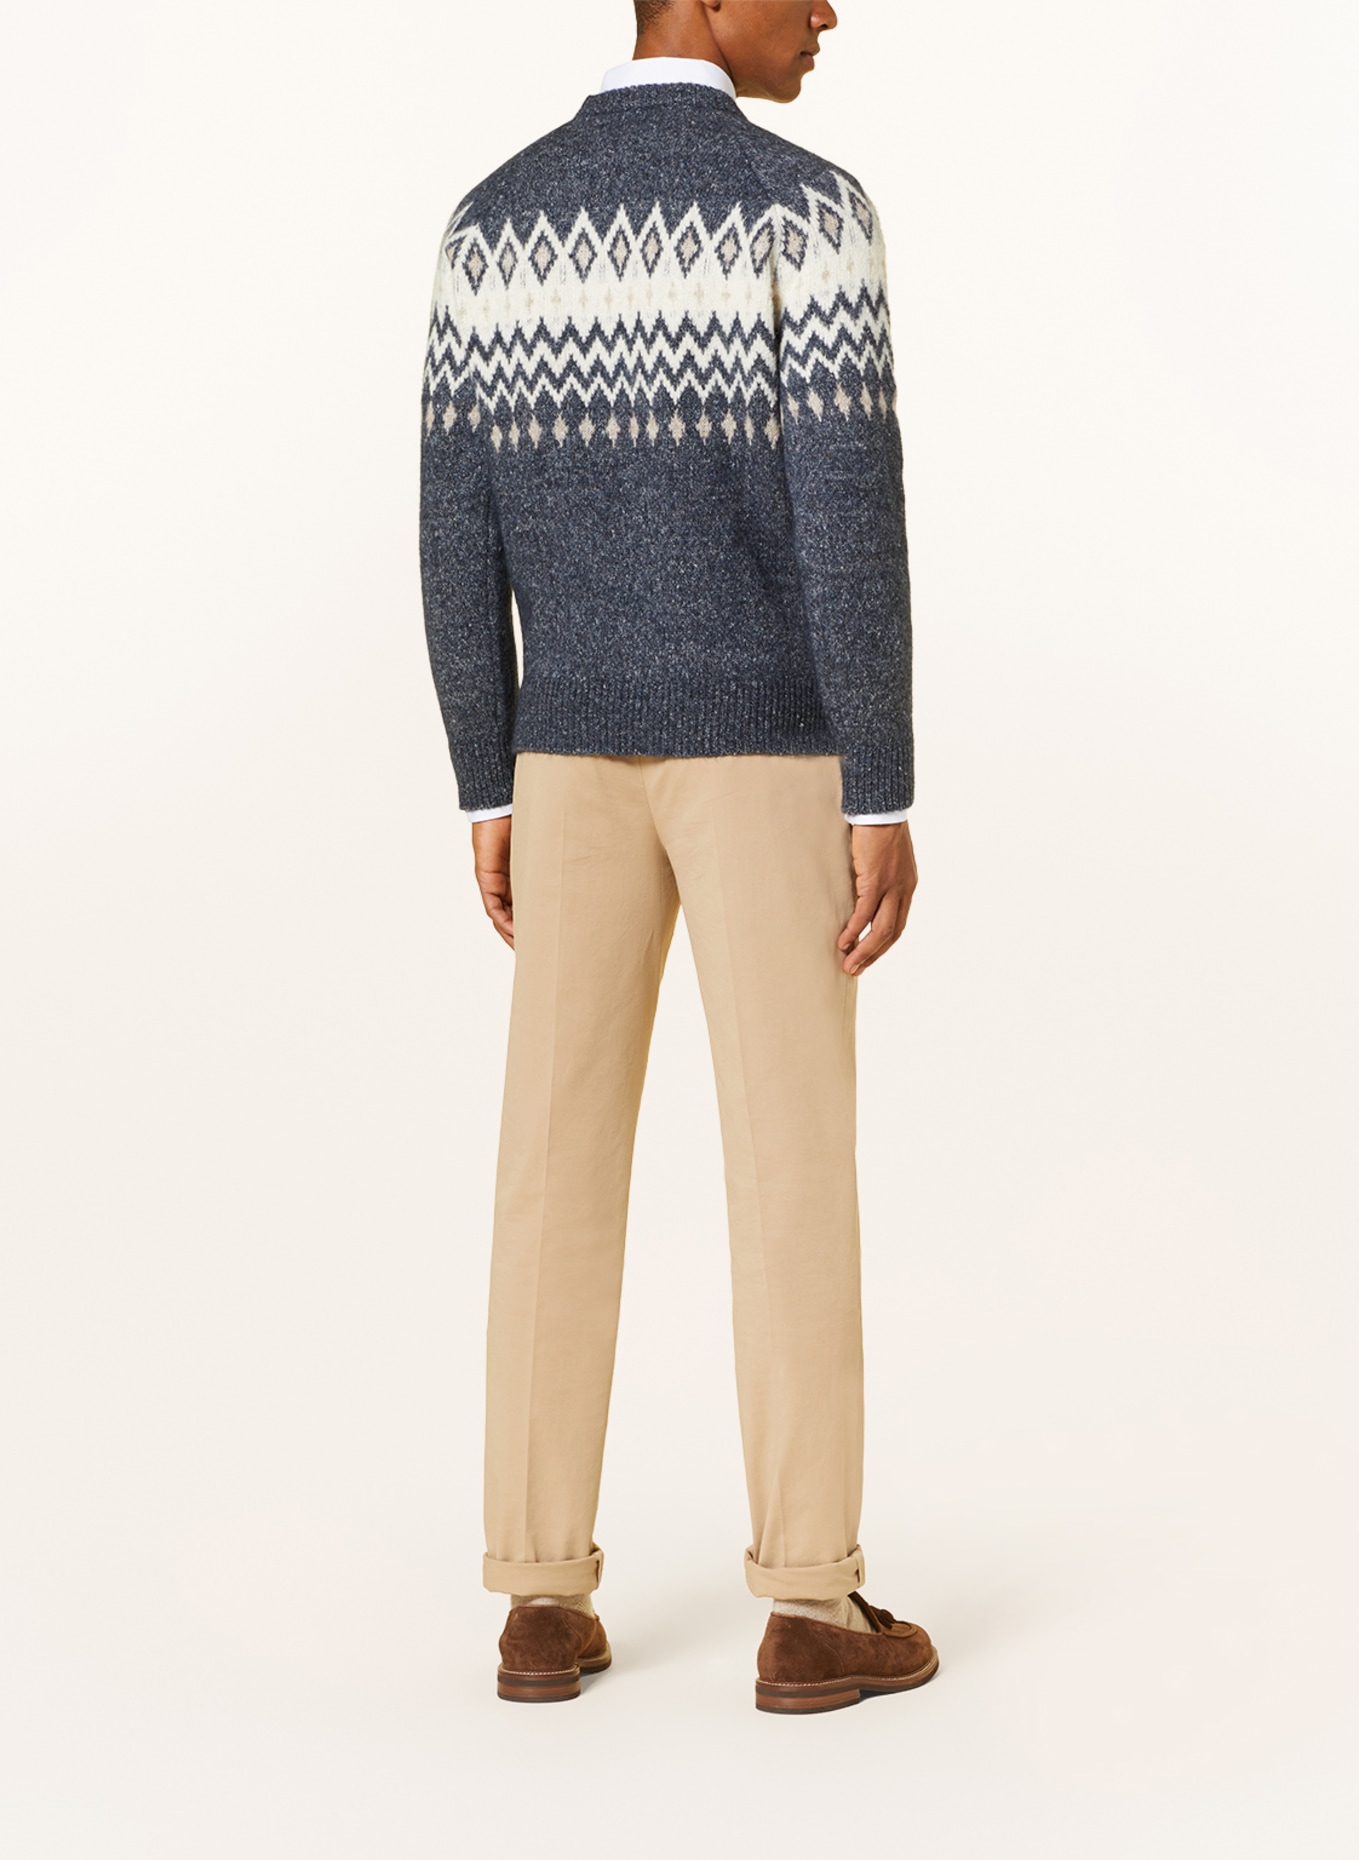 BRUNELLO CUCINELLI Sweater with alpaca, Color: GRAY/ DARK BLUE/ WHITE (Image 3)